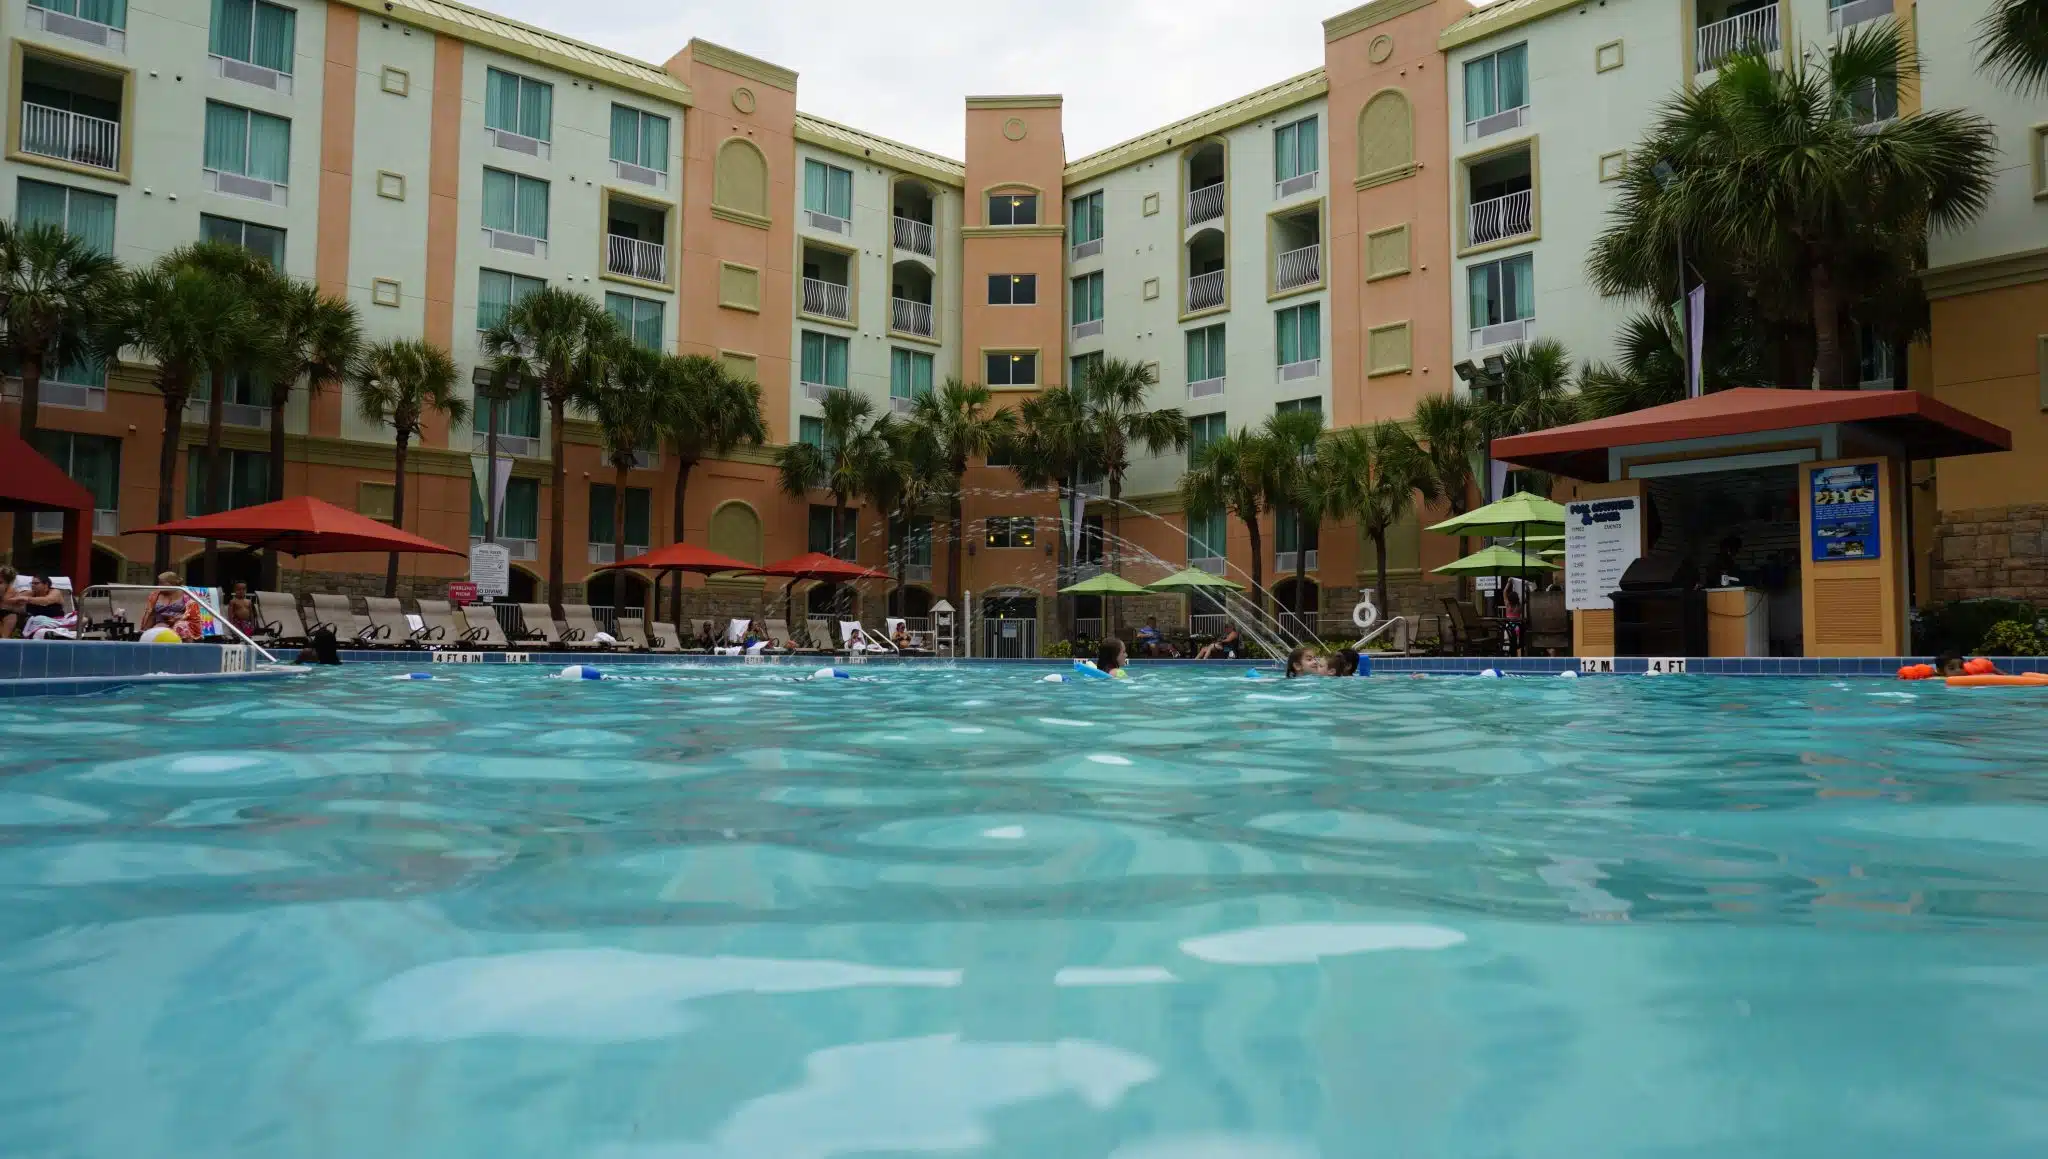 Make a Splash at the Holiday Inn Resort Orlando-Lake Buena Vista